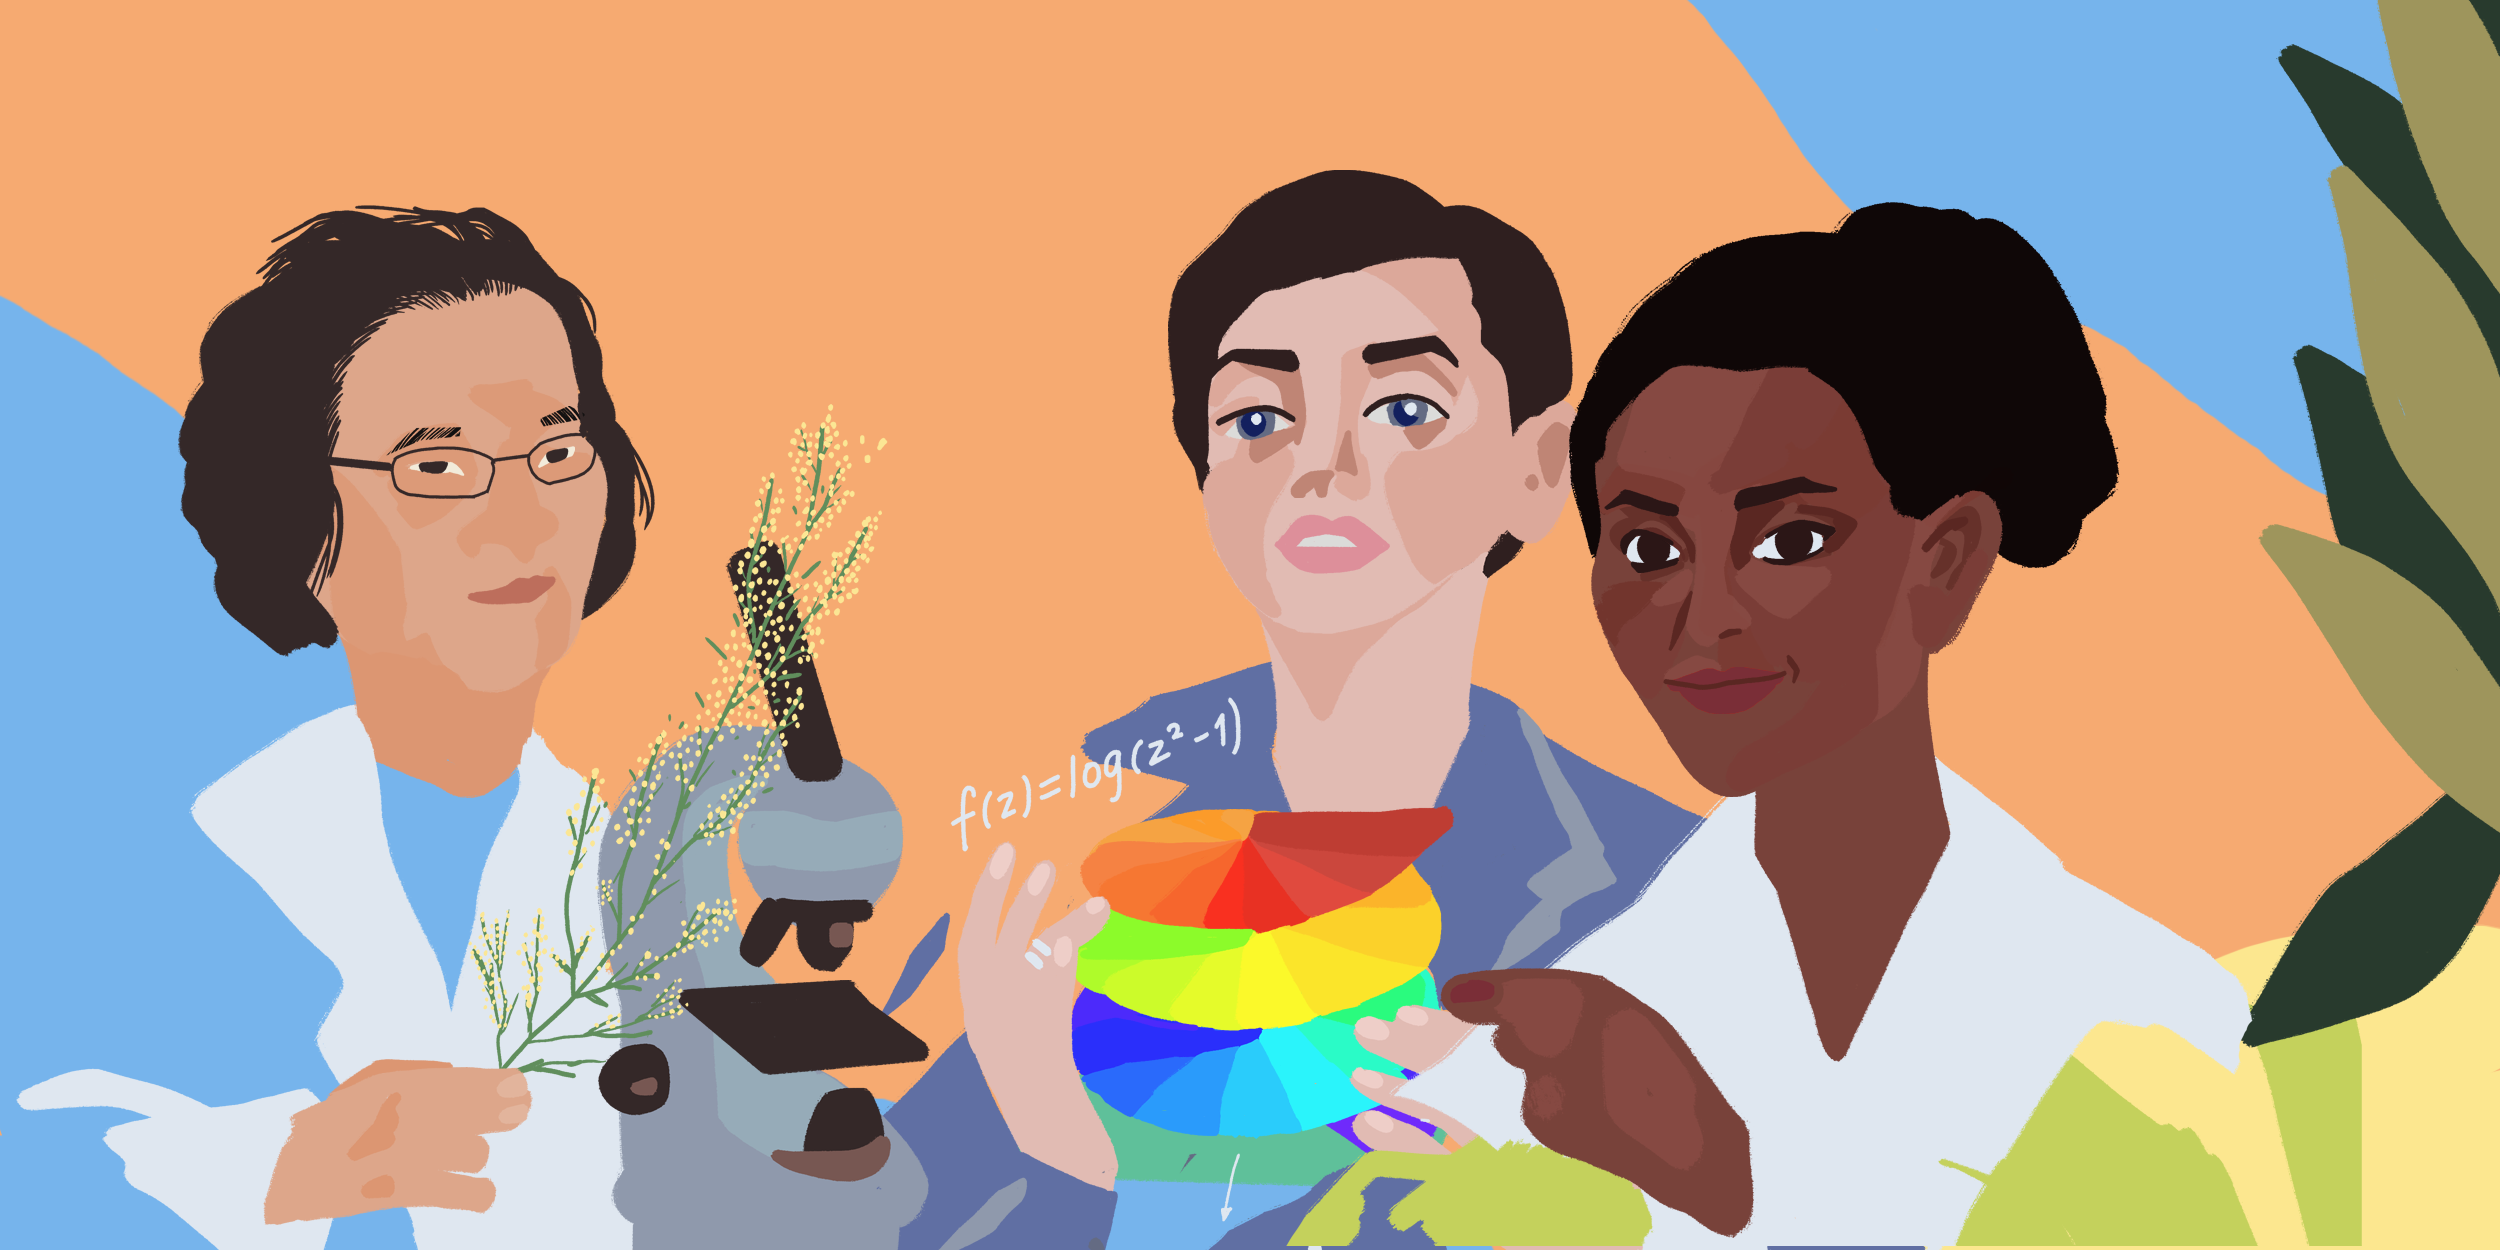 Illustration of women in science Tu Youyou, Maryam Mirzakhani and Segenet Kelemu